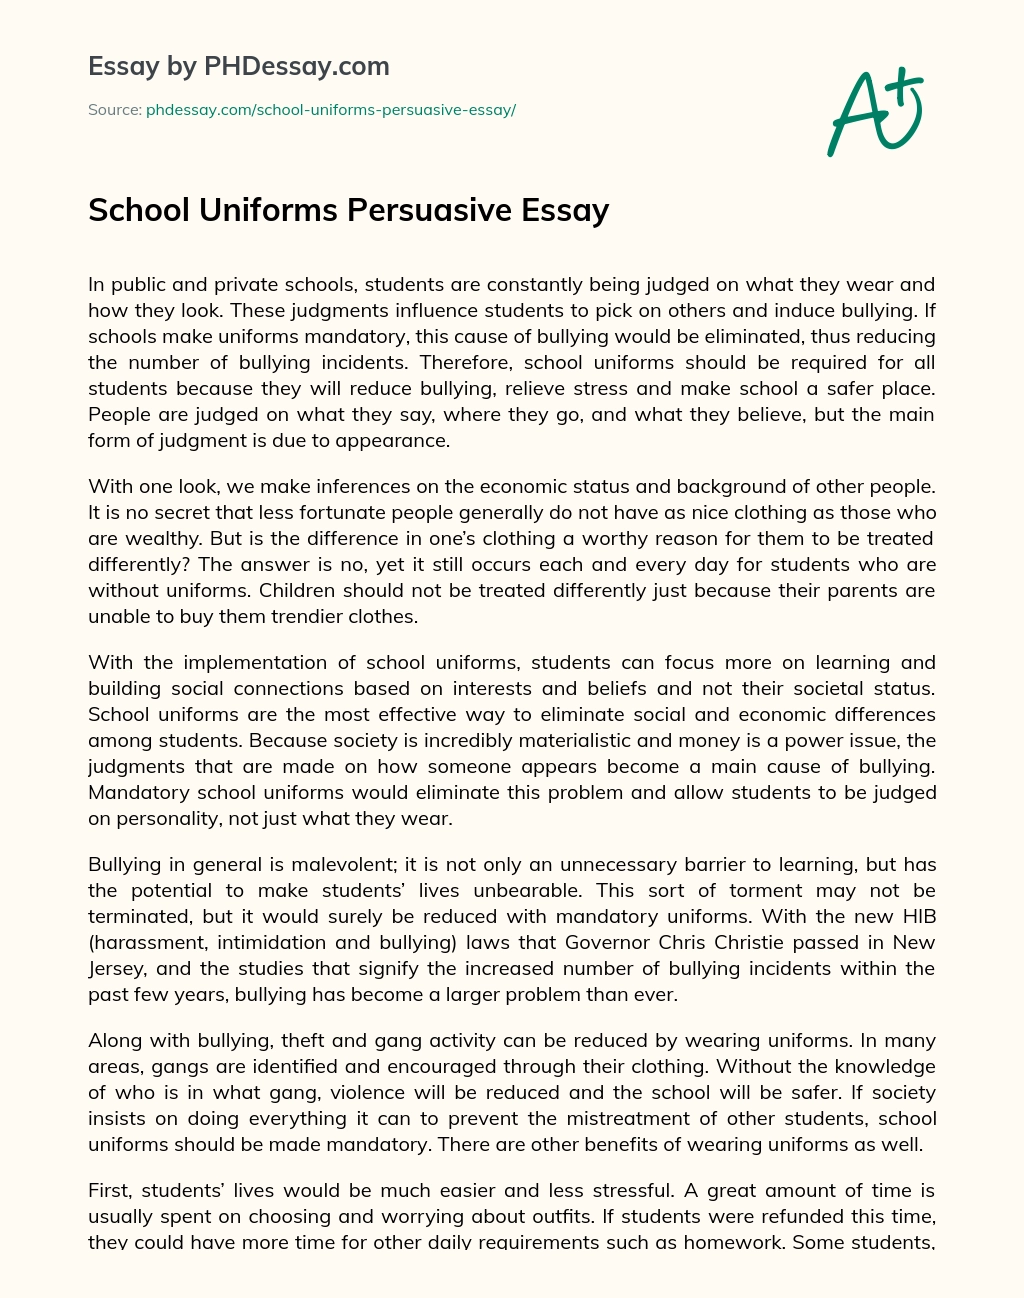 for school uniforms persuasive essay